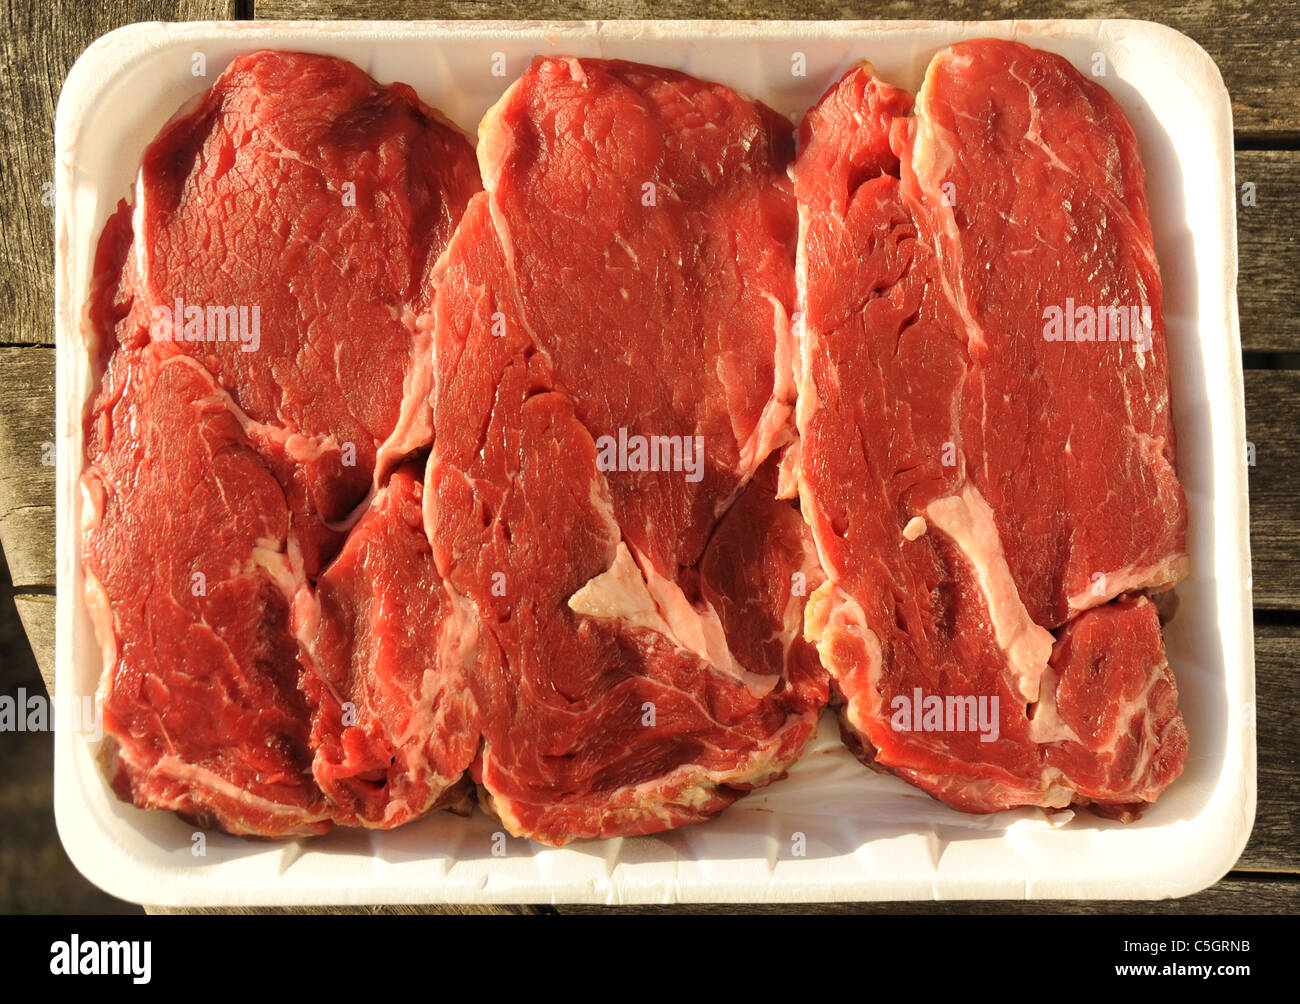 Steaks de boeuf et non cuits dans un carton Banque D'Images